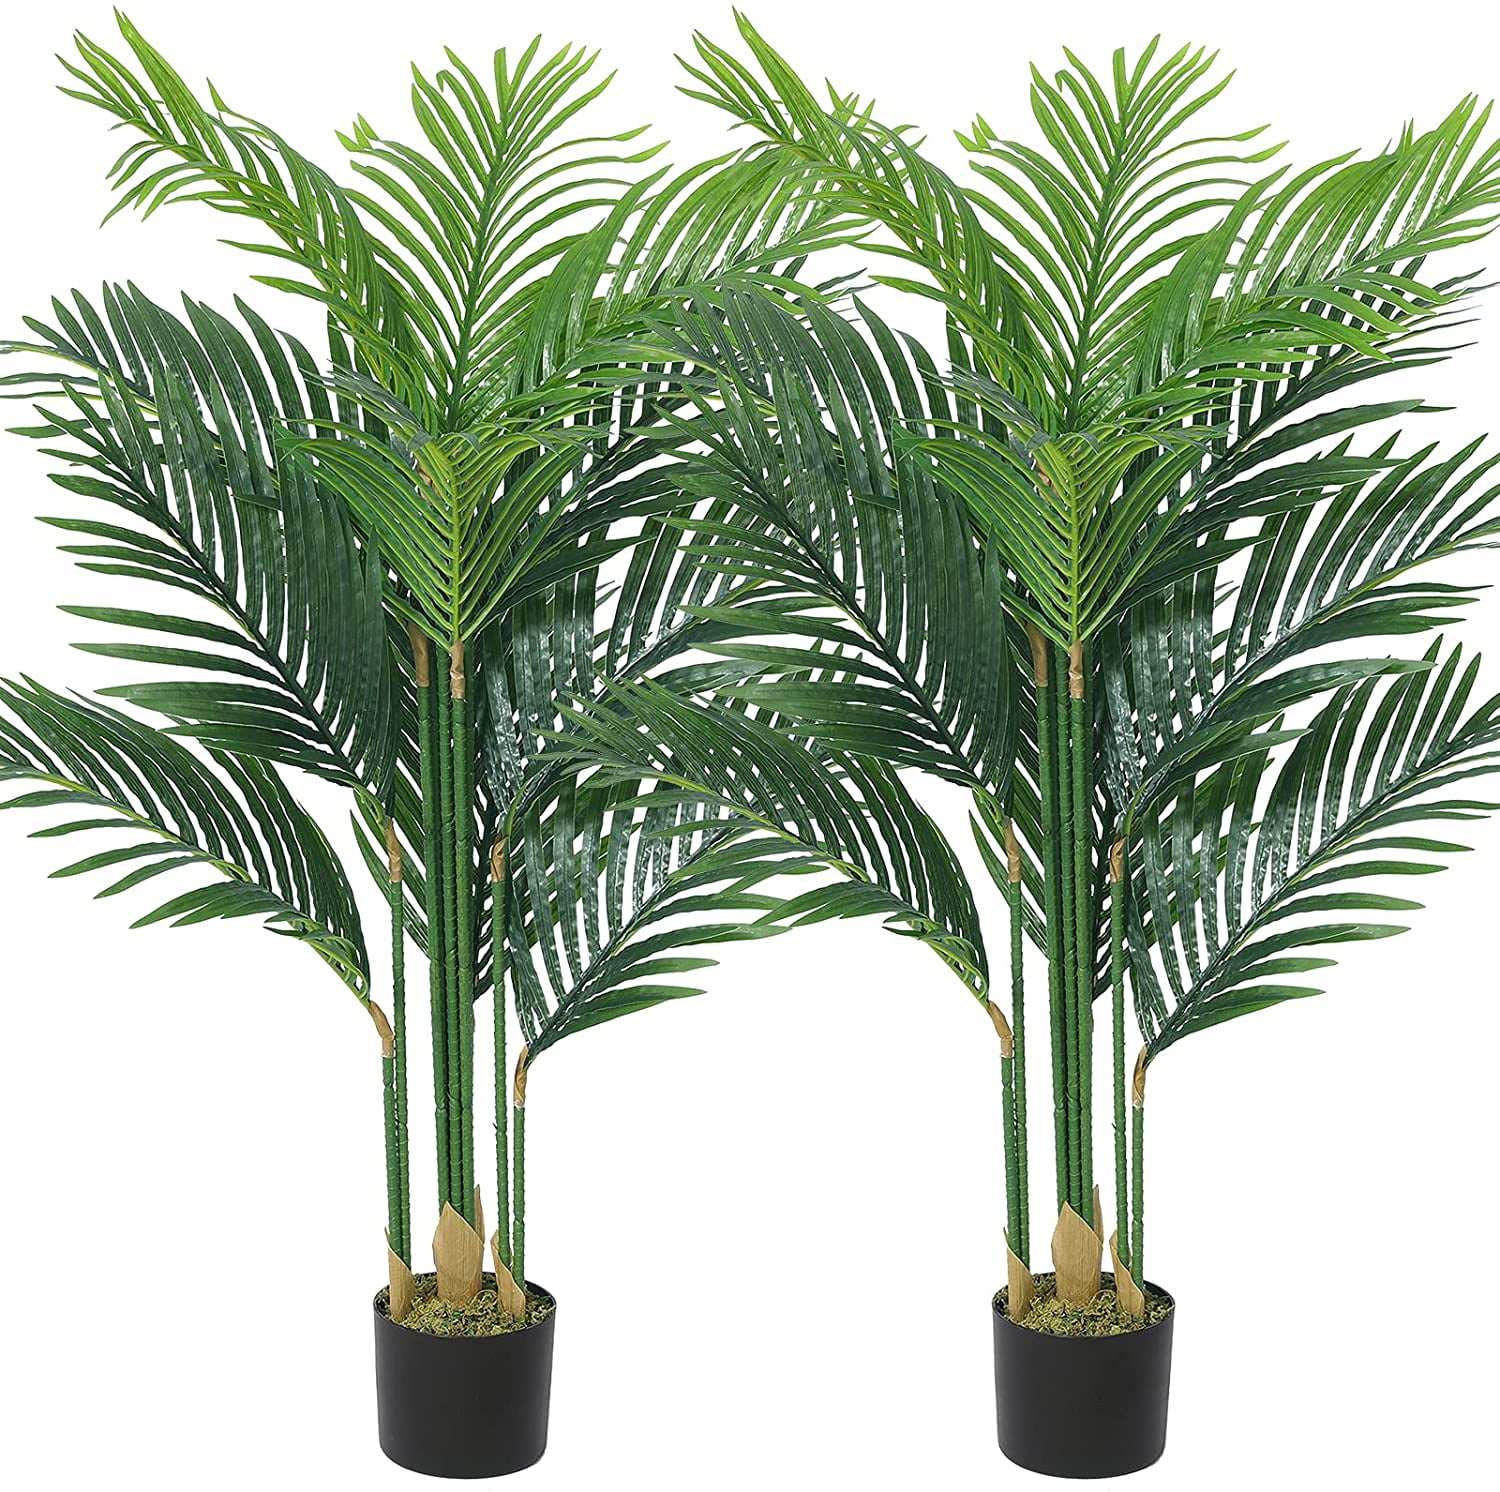 Large 95cm Artificial Plants Home Office Garden Feature Faux Plant Tree Pot New 